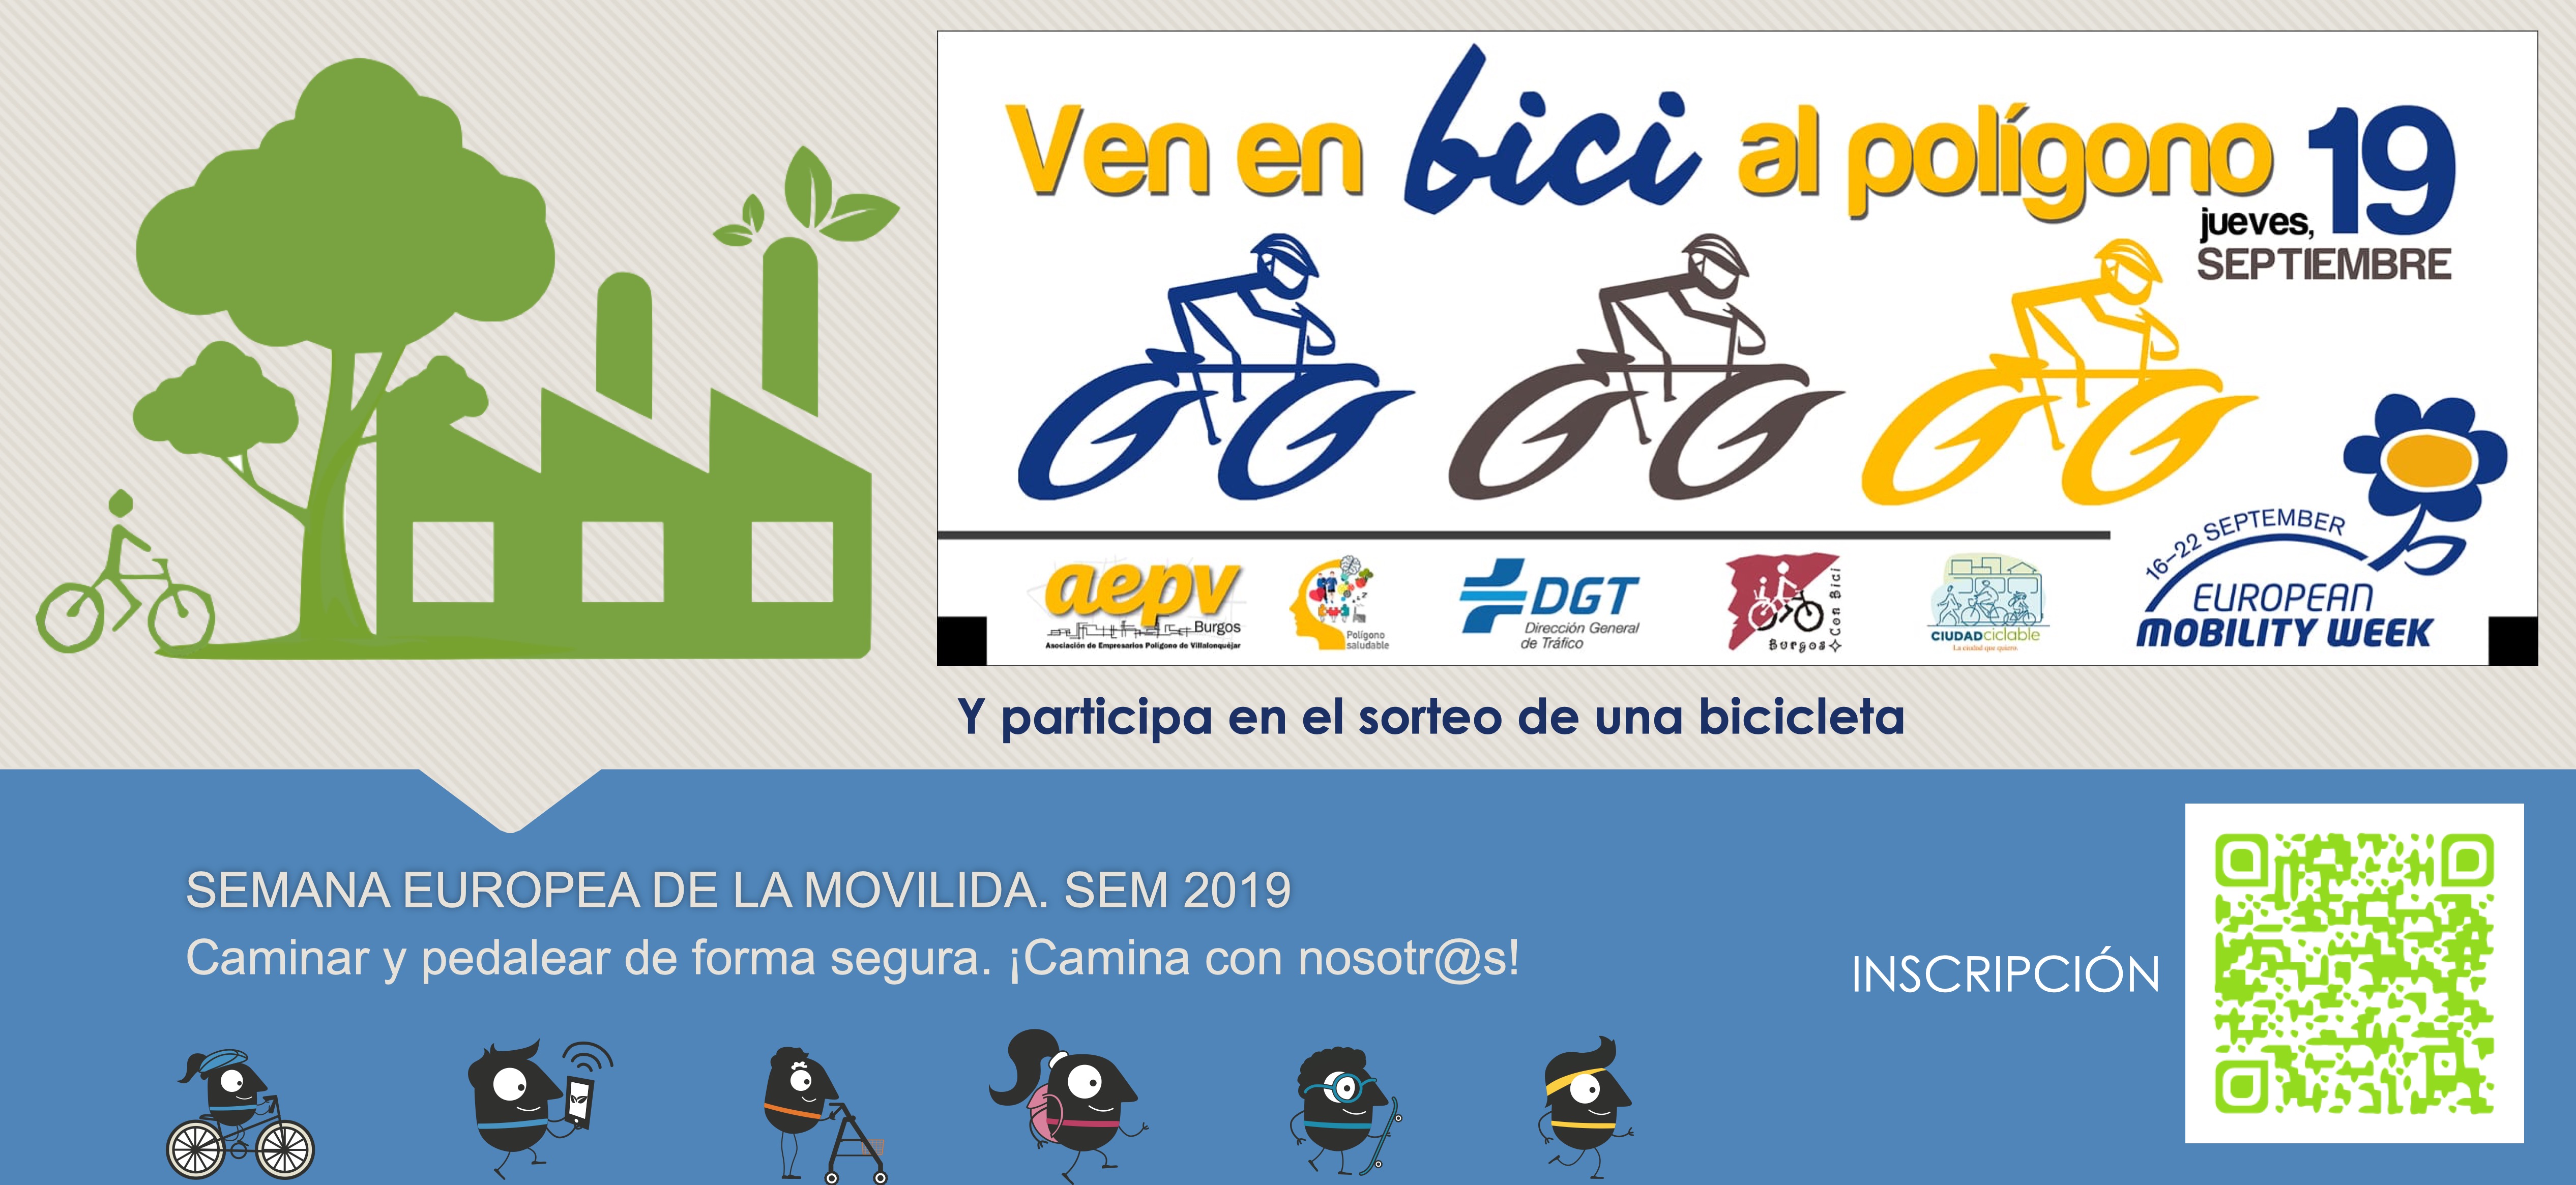 Jueves 19 de septiembre de 2019. Participa en el concurso de una bicicleta.